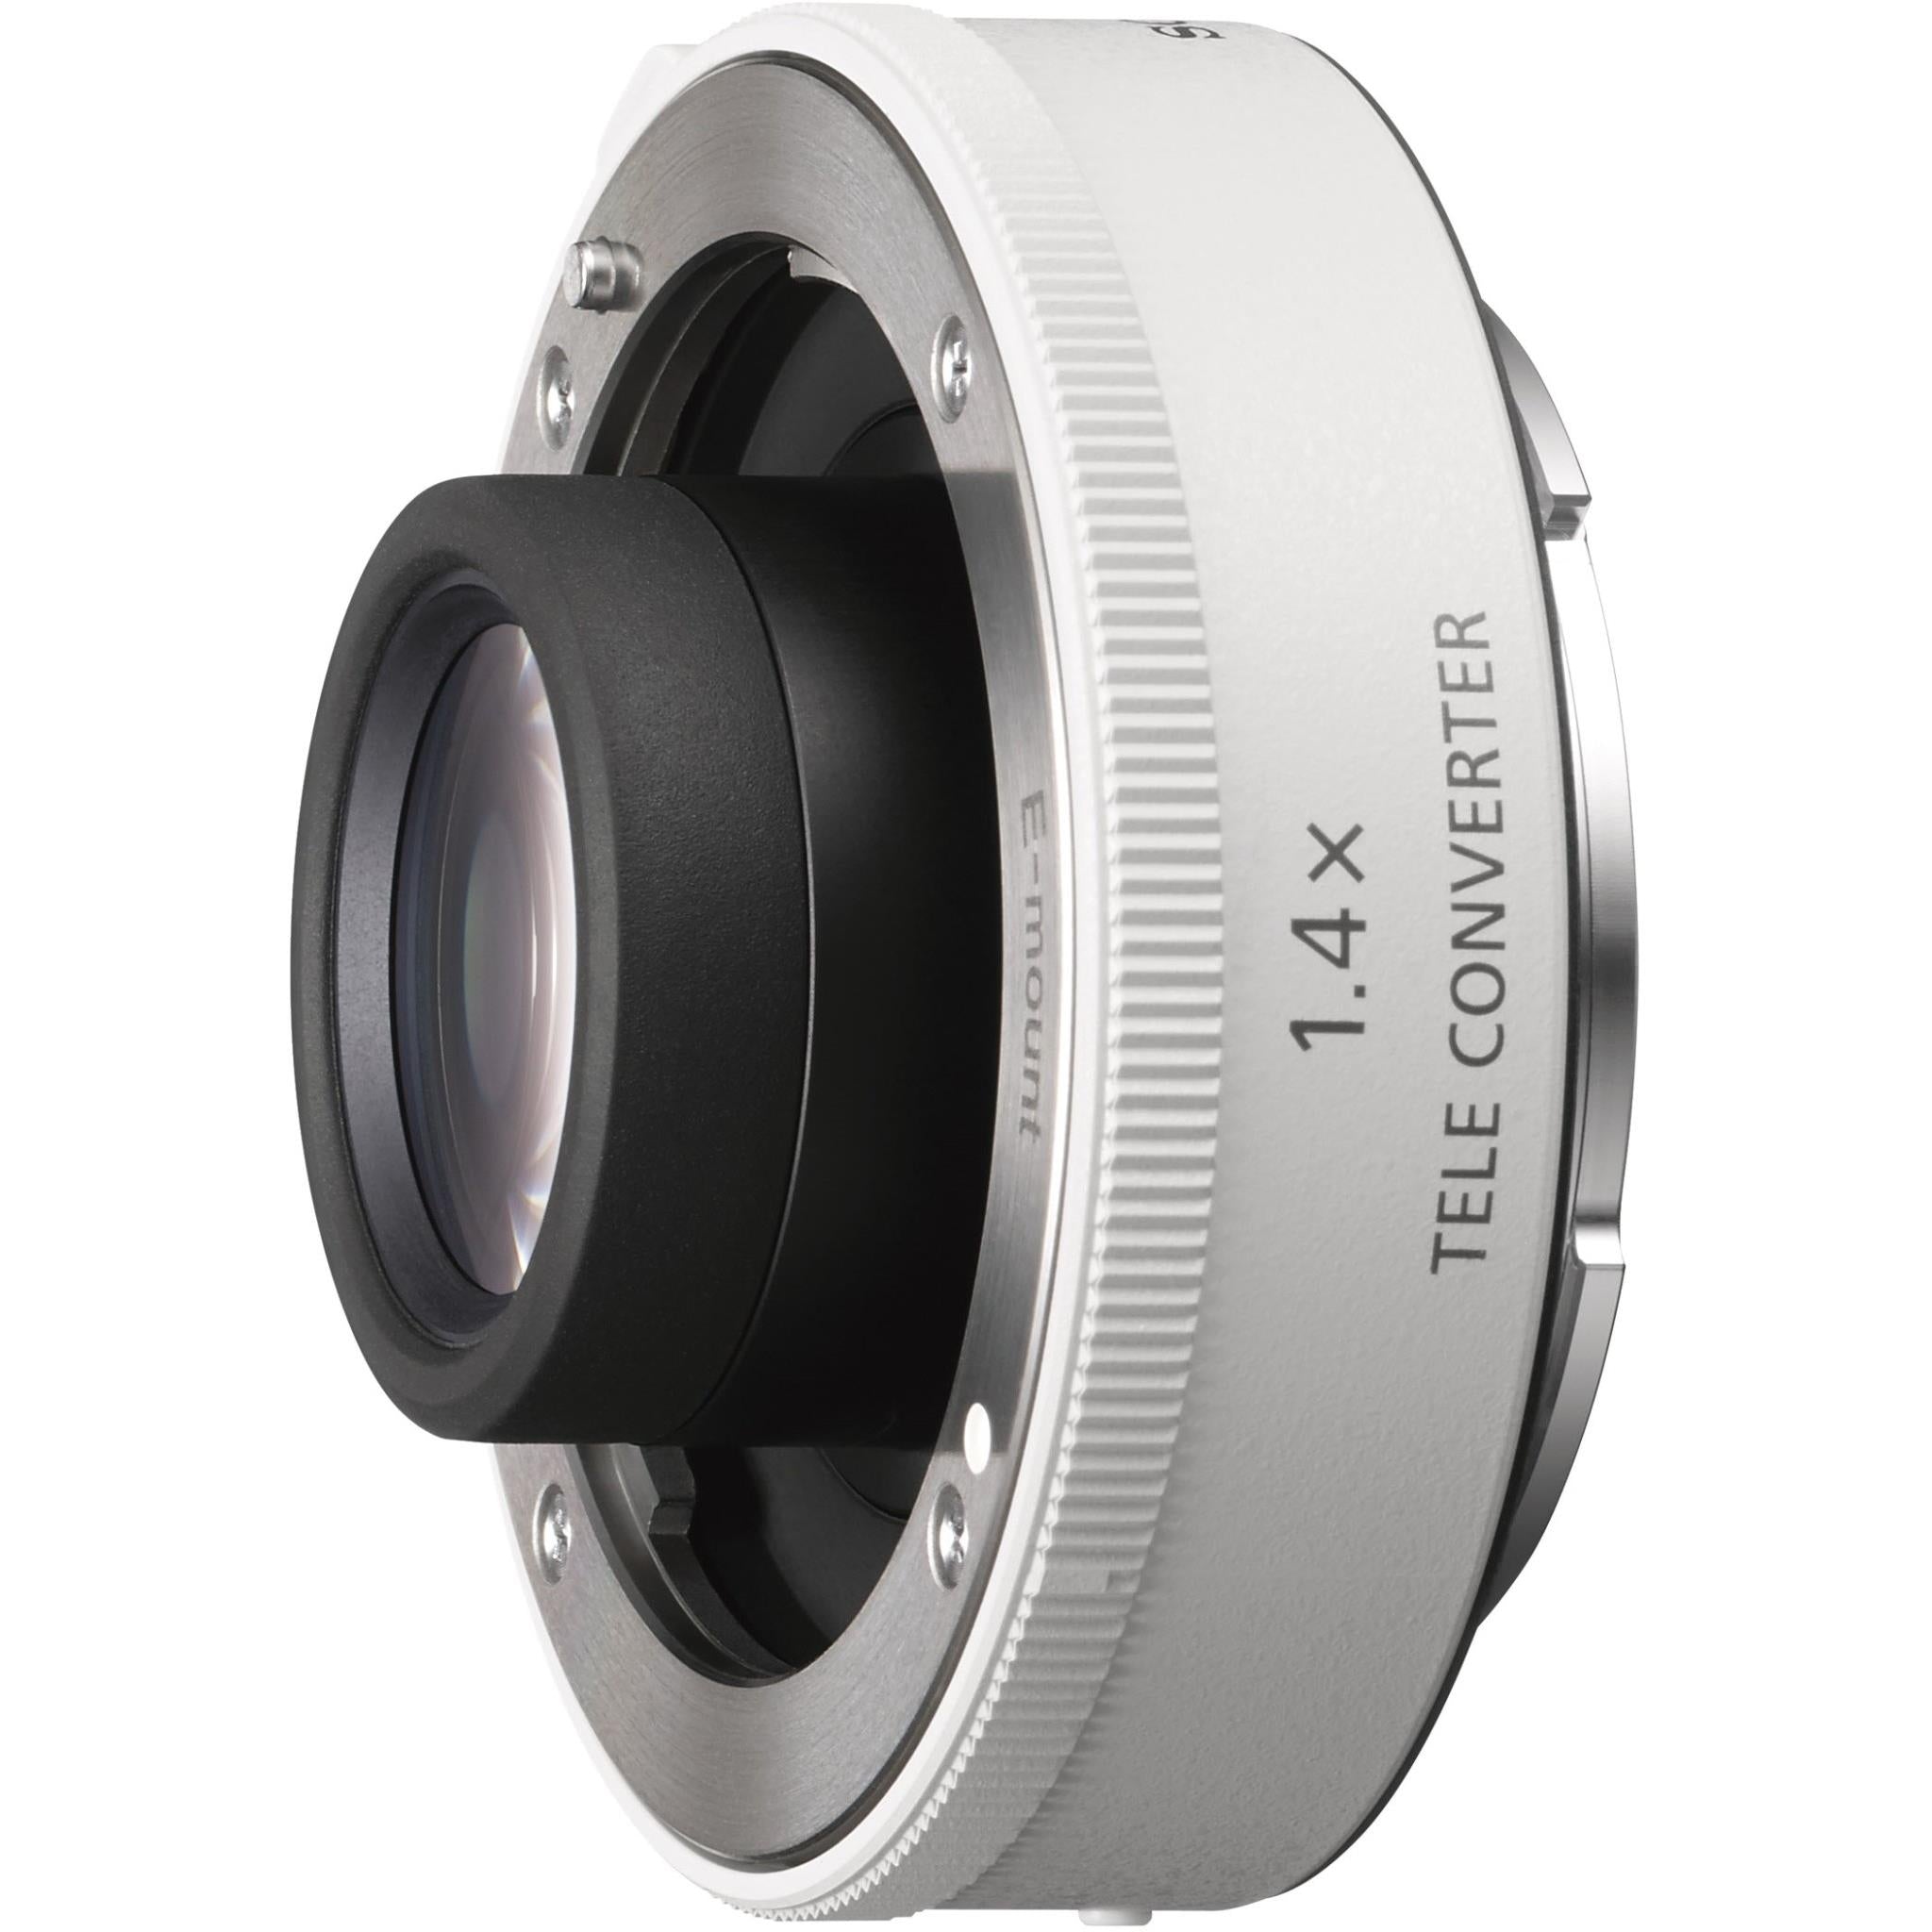 sony 70-200mm 1.4x teleconverter lens